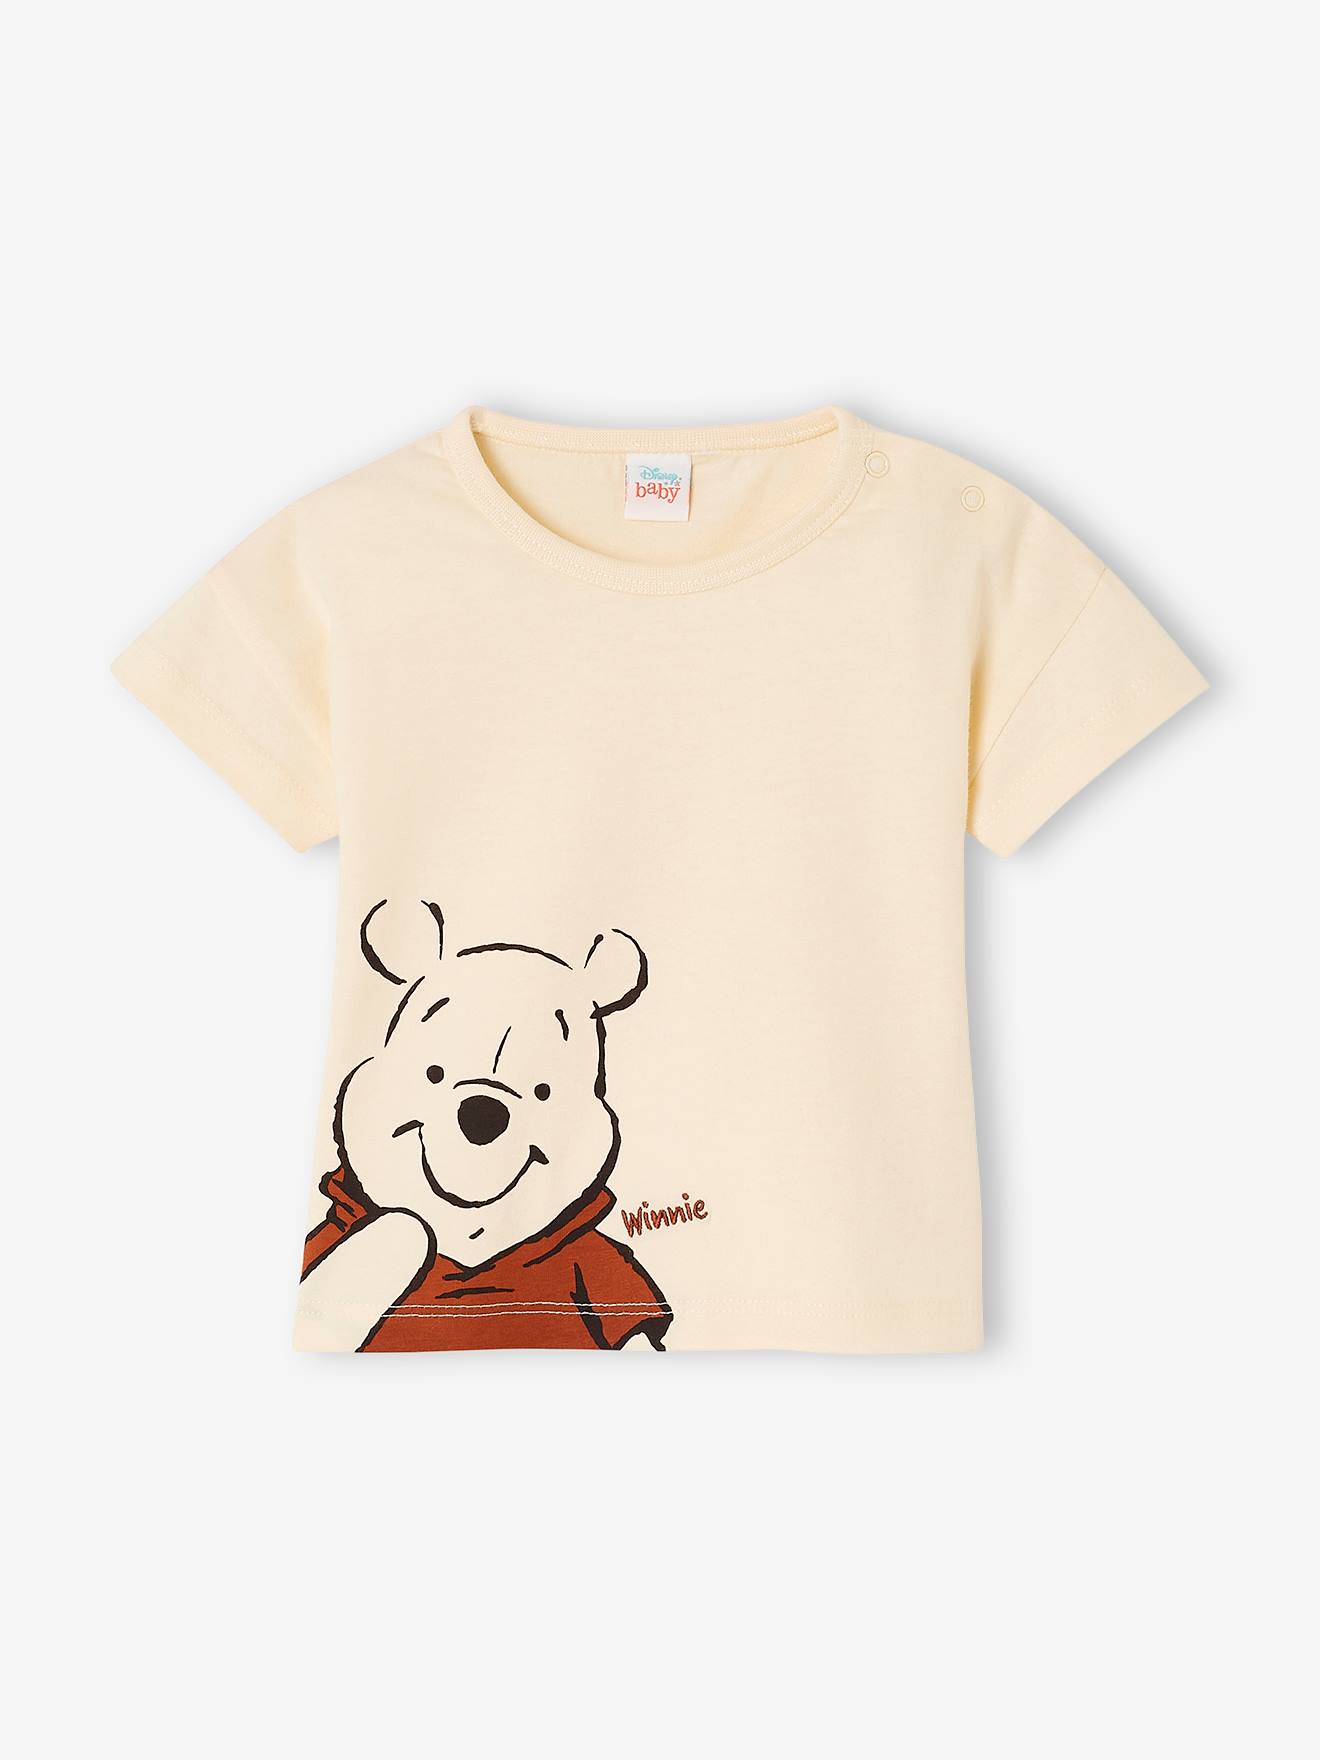 2x T-Shirt Pooh Gr.86 Disney NEU 100%Baumwolle bio blau grau set bär baby sommer 